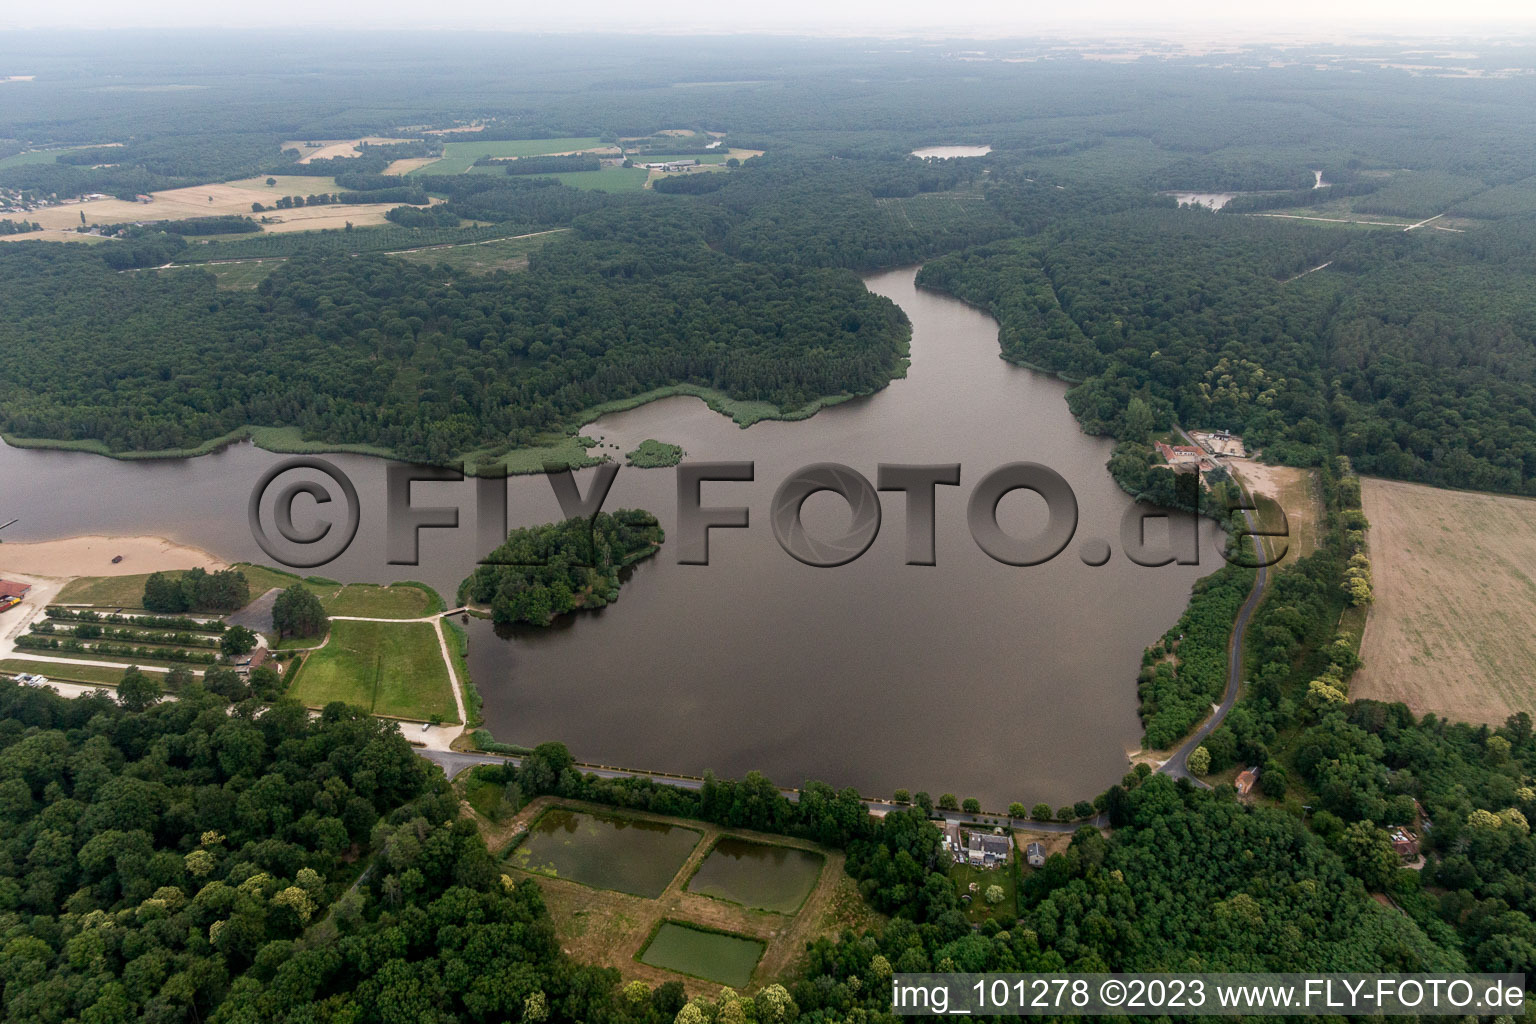 Combreux im Bundesland Loiret, Frankreich aus der Luft betrachtet